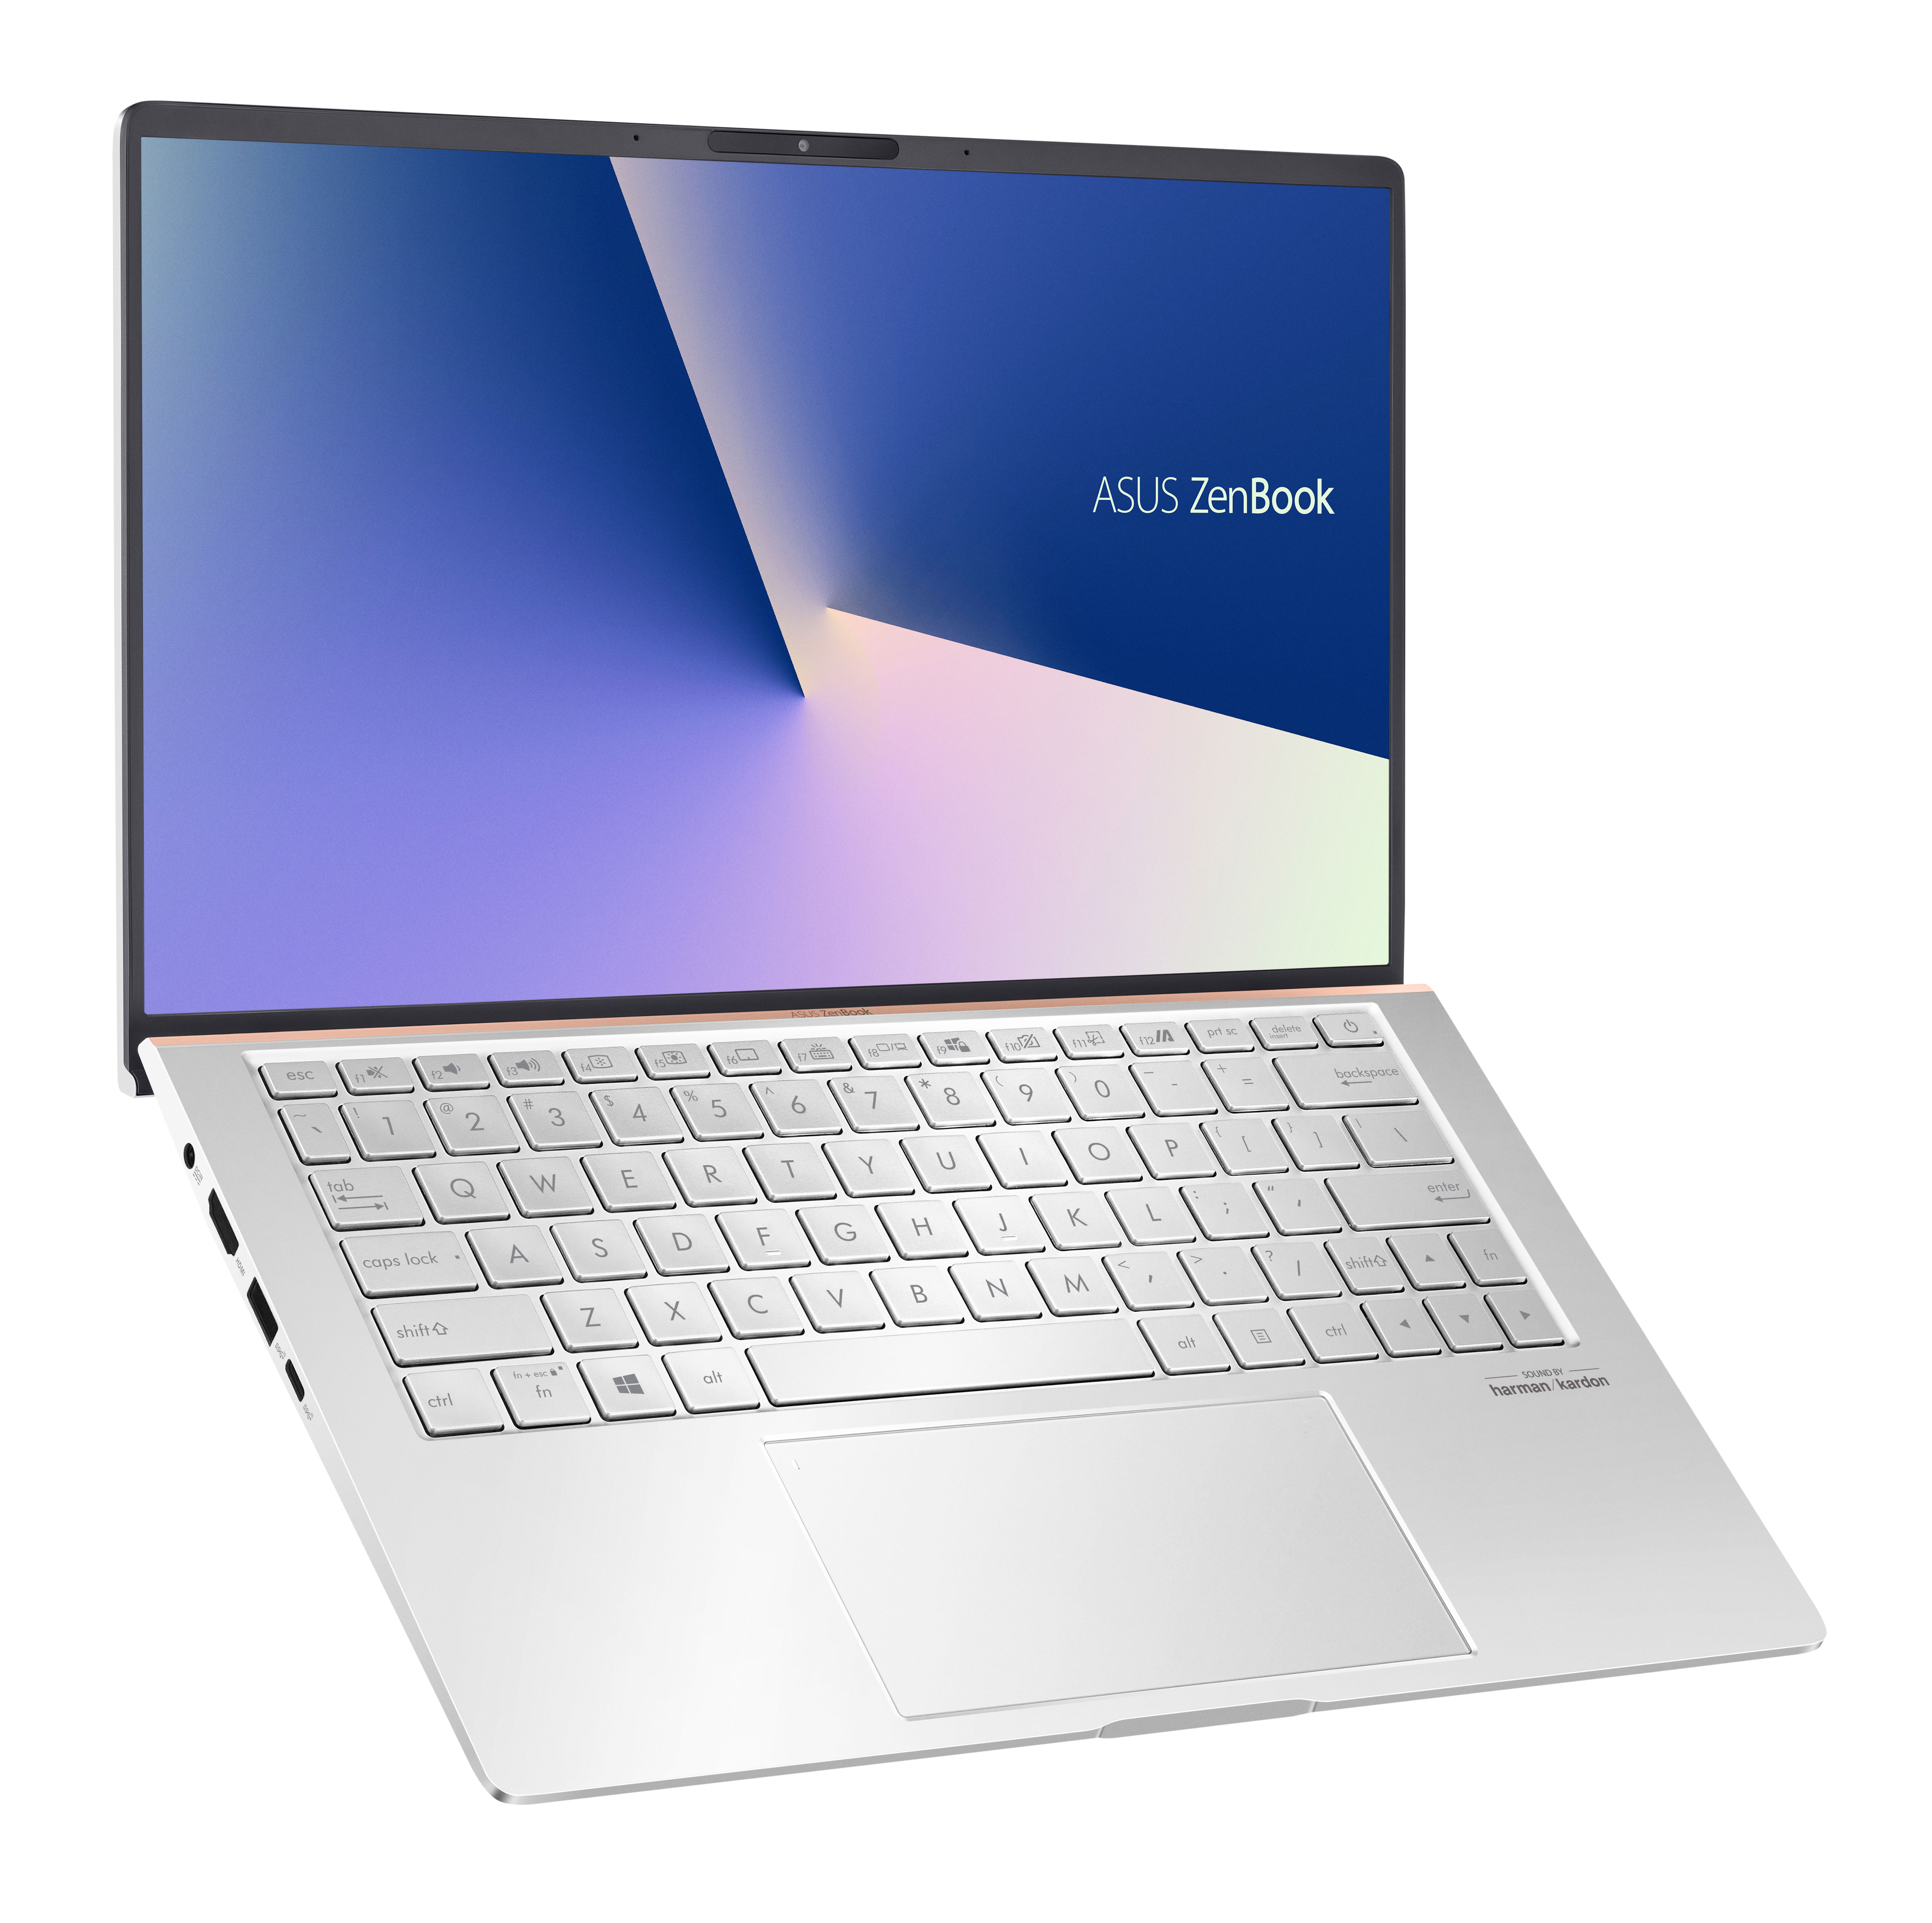 Asus ZenBook 13 (UX333) Most Compact 13.3 Laptop 